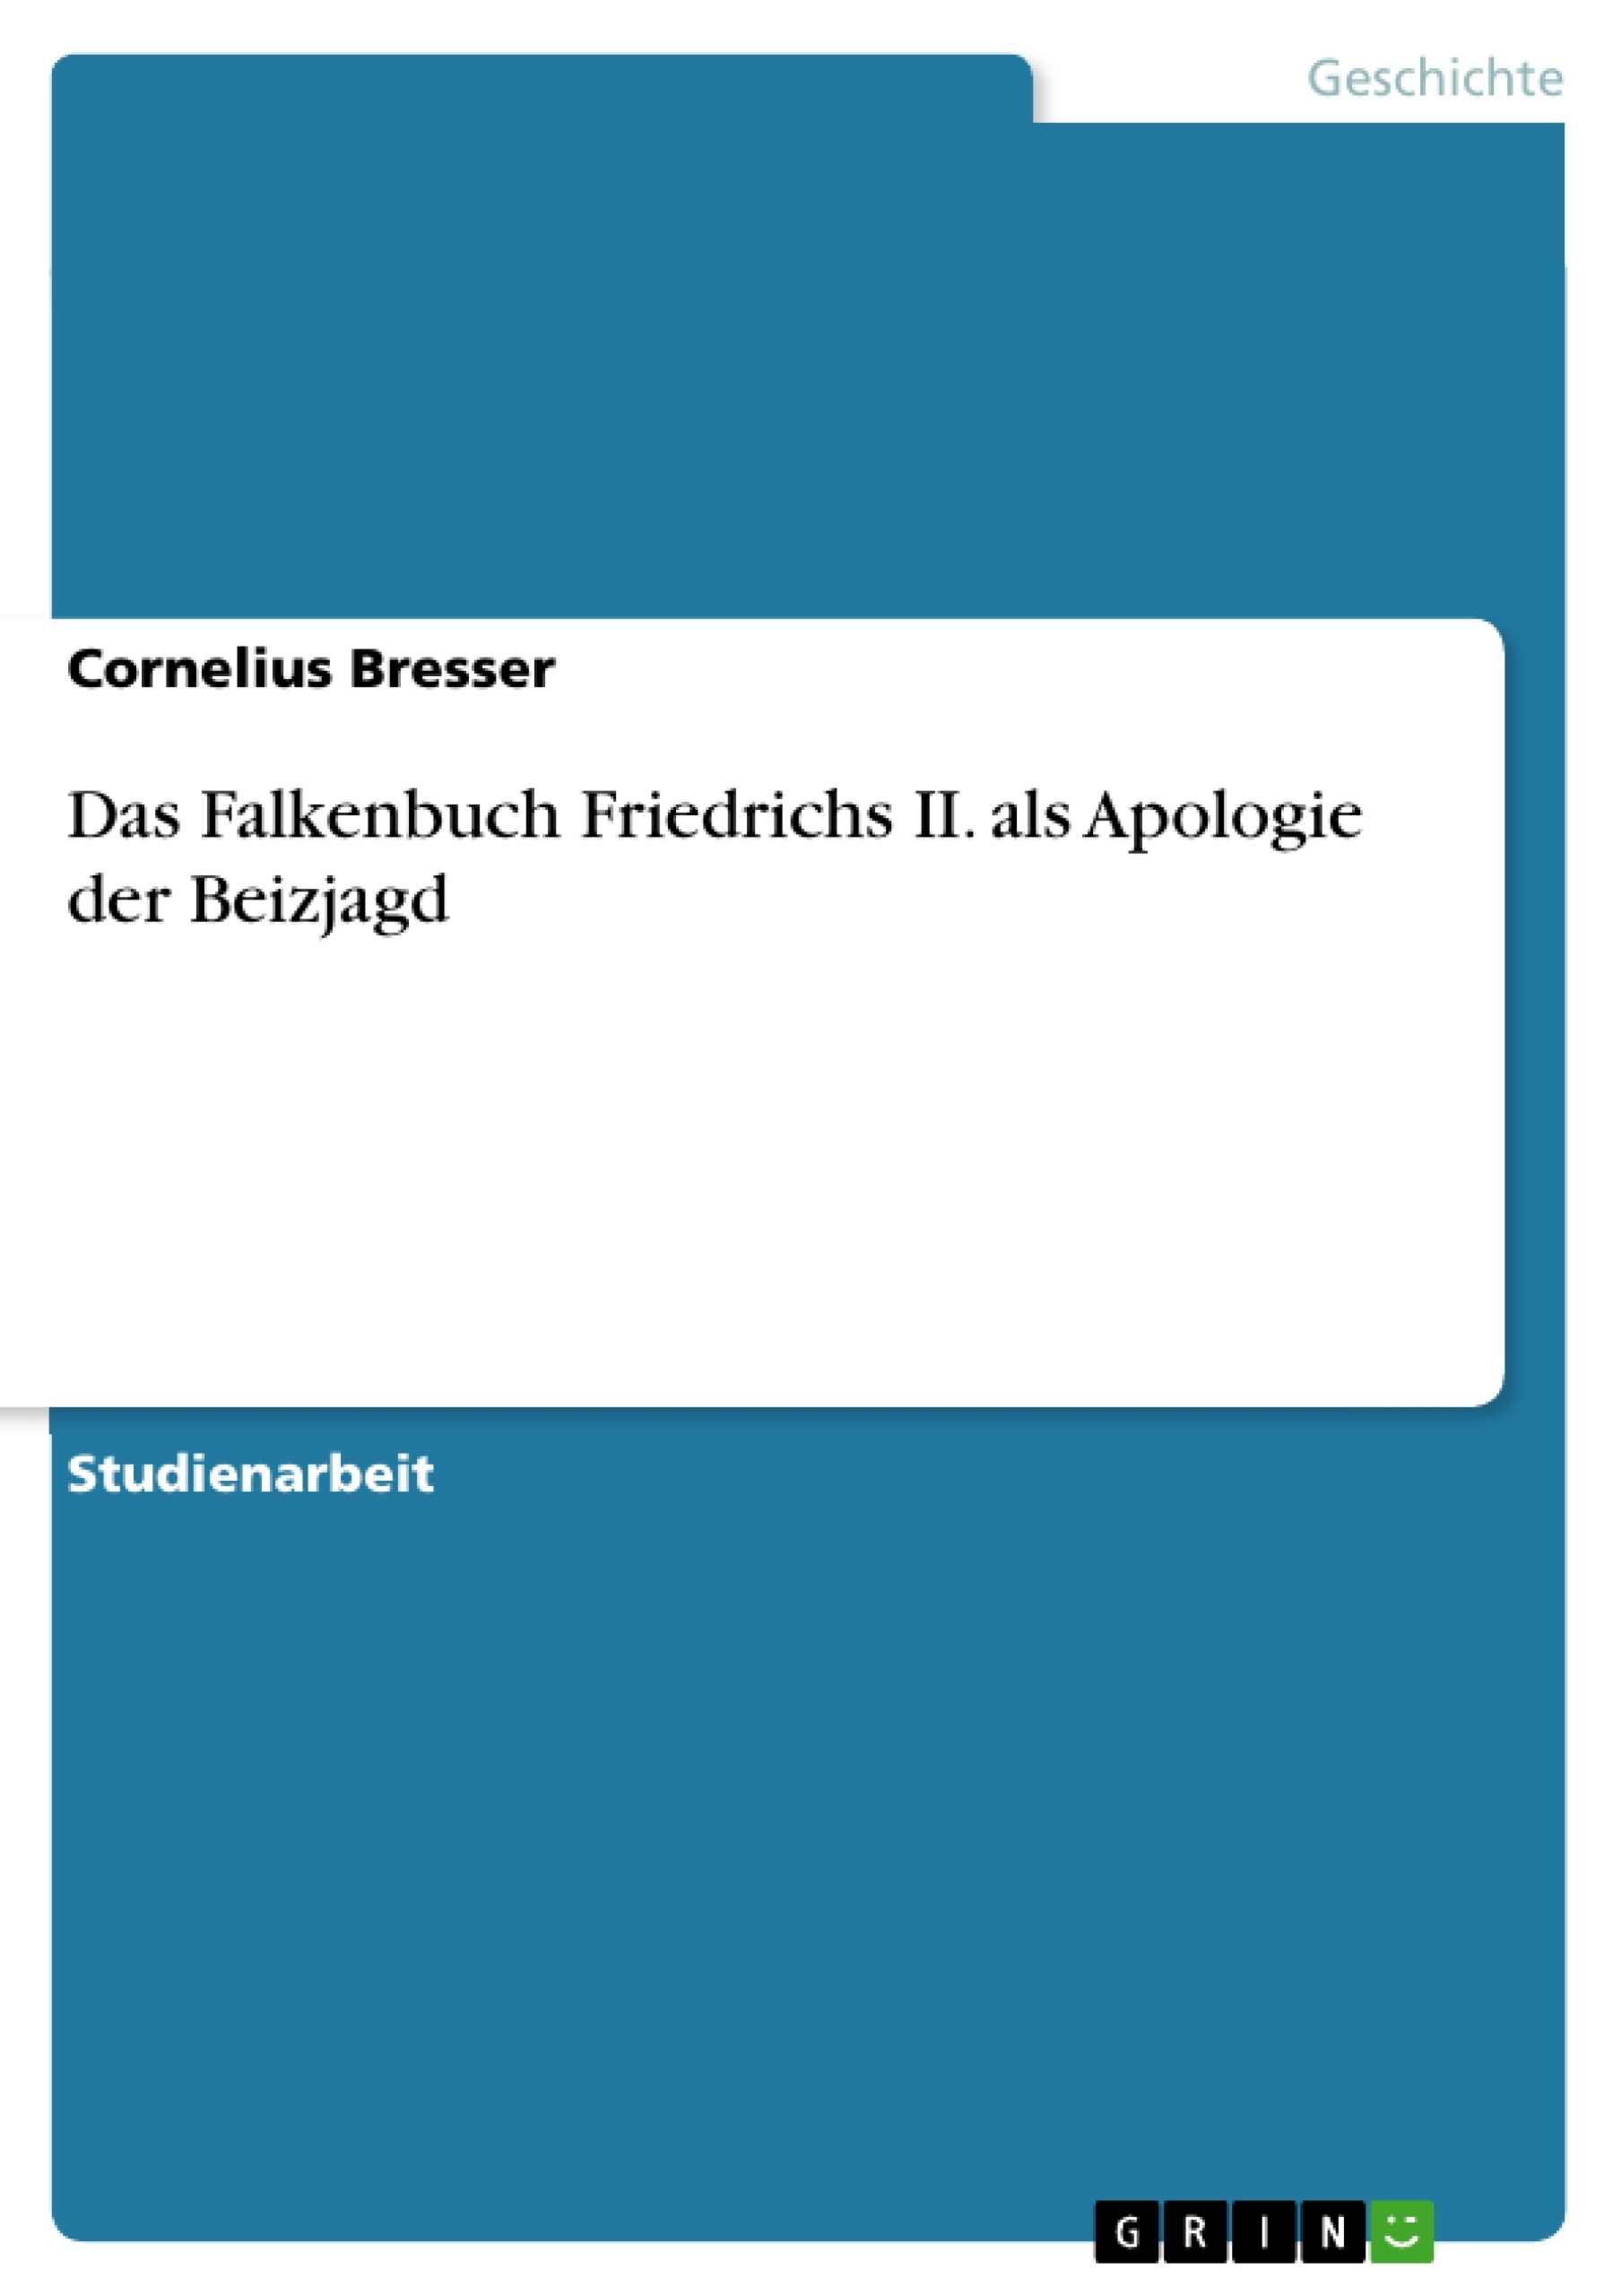 Title: Das Falkenbuch Friedrichs II. als Apologie der Beizjagd